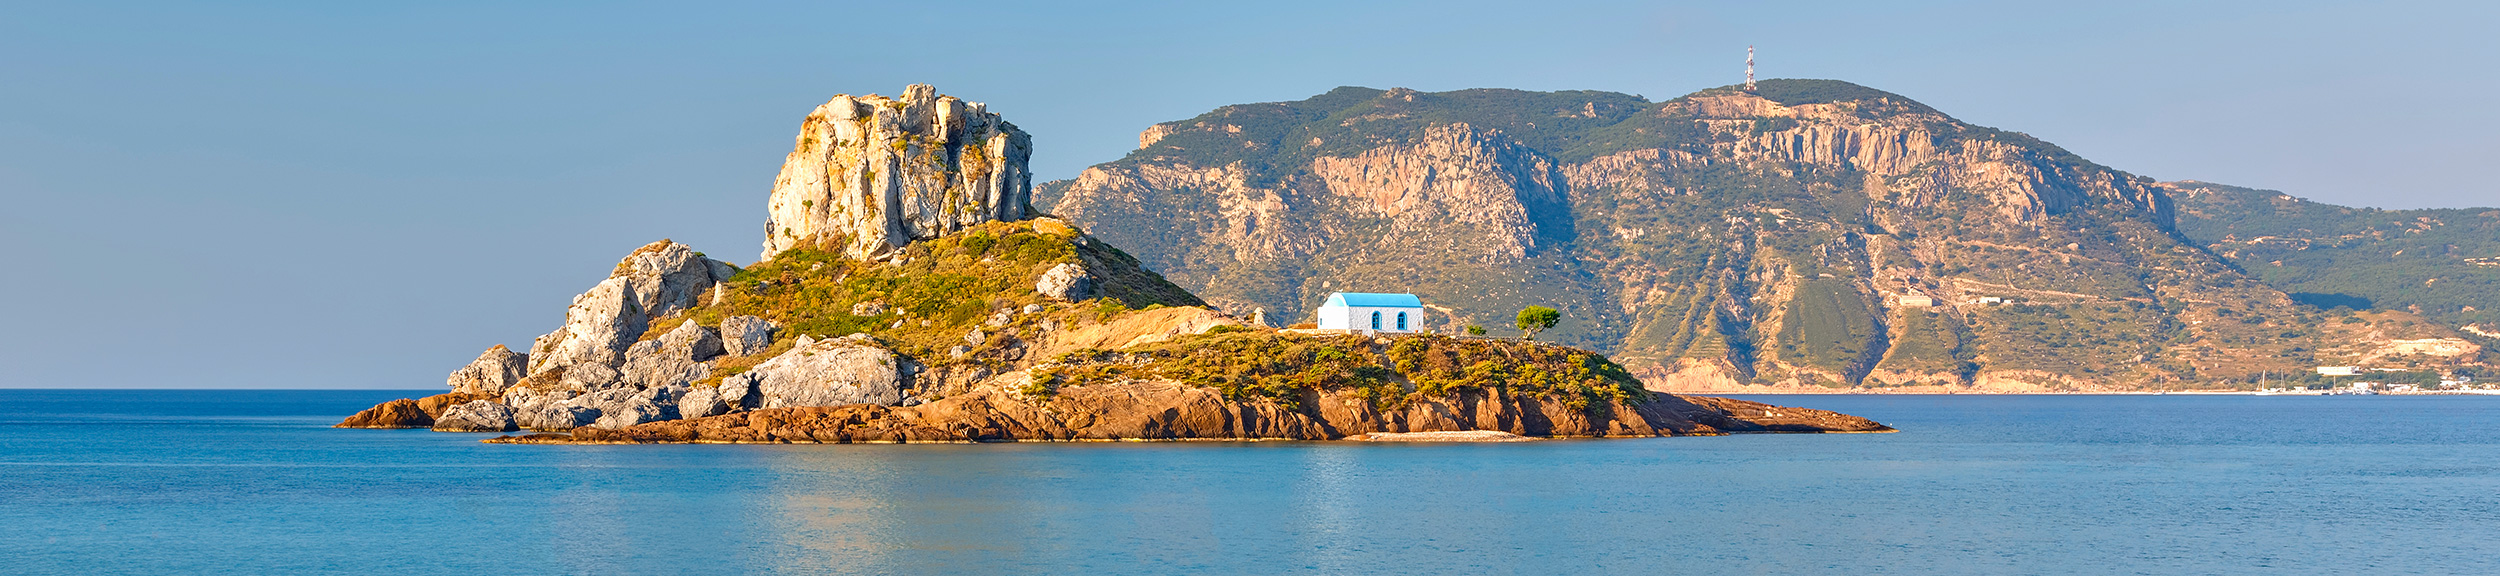 Blick auf ein Inselchen in Griechenland